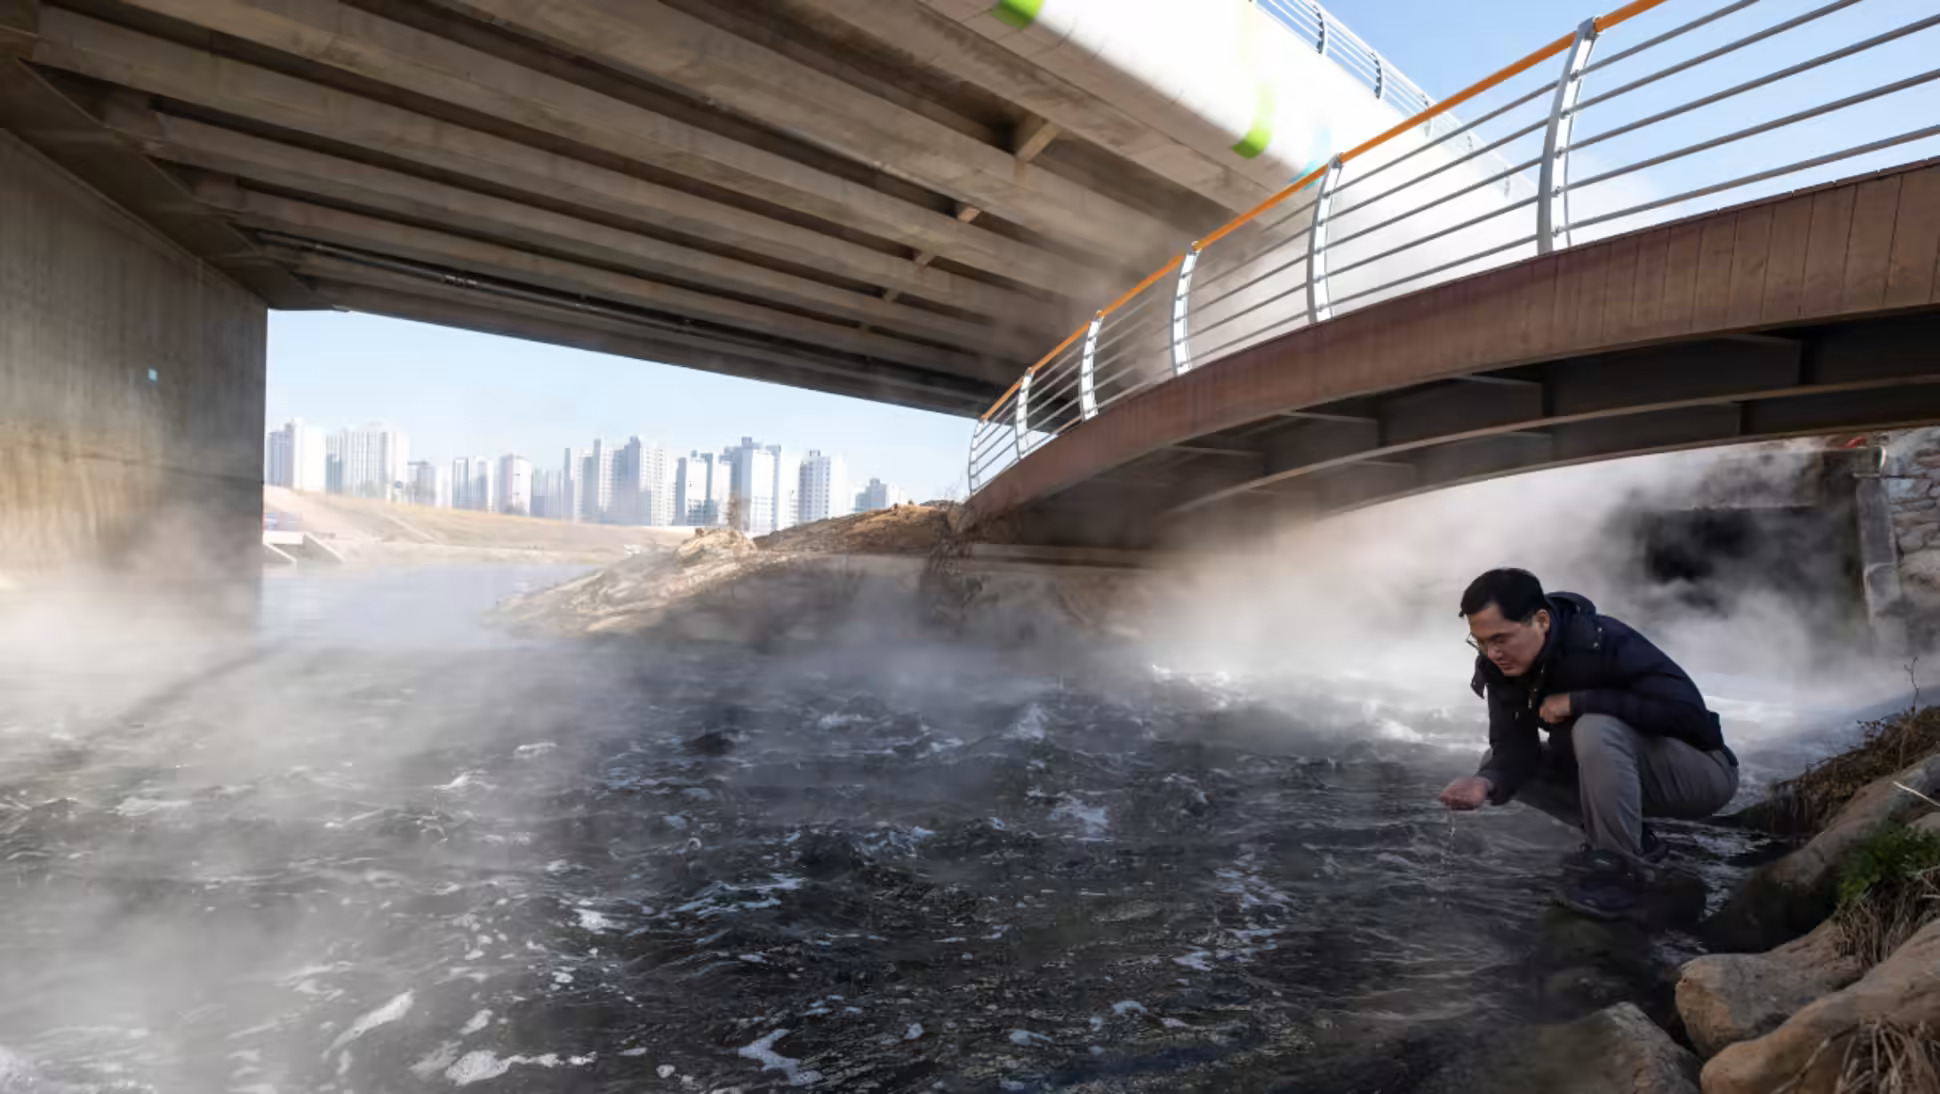 Các nhà hoạt động môi trường Hàn Quốc như Kim Hoon (ảnh) lo lắng về tác động môi trường của sự bùng nổ sản xuất chip của Hàn Quốc. Ở Pyeongtaek, nước thải nóng từ một nhà máy gần đó có thể làm thay đổi hệ sinh thái ở các con sông địa phương. (Ảnh Jean Chung).